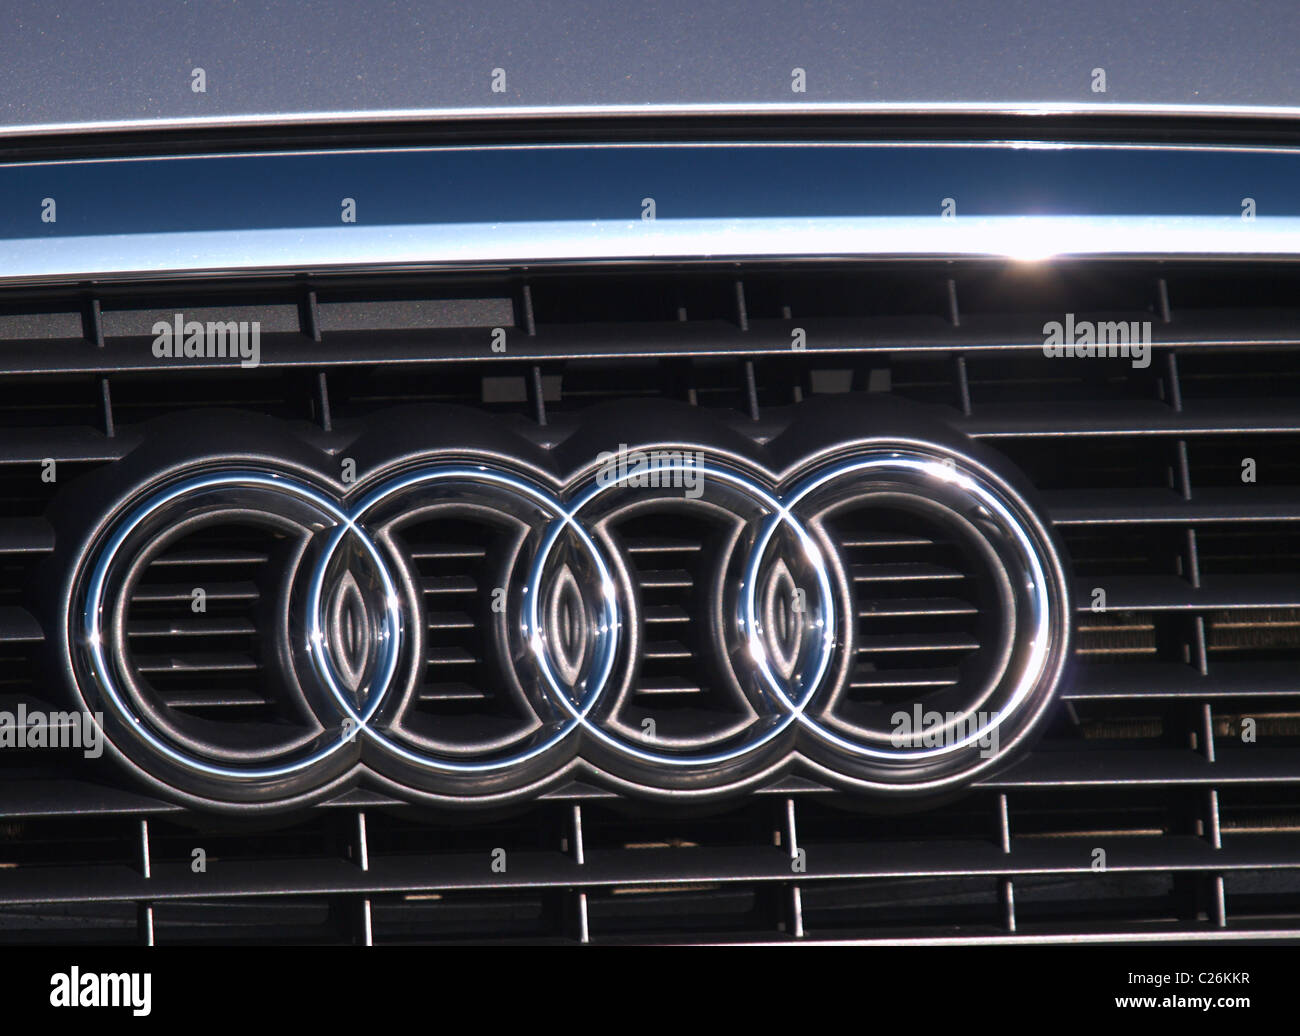 Audi car badge in the sun, UK Stock Photo